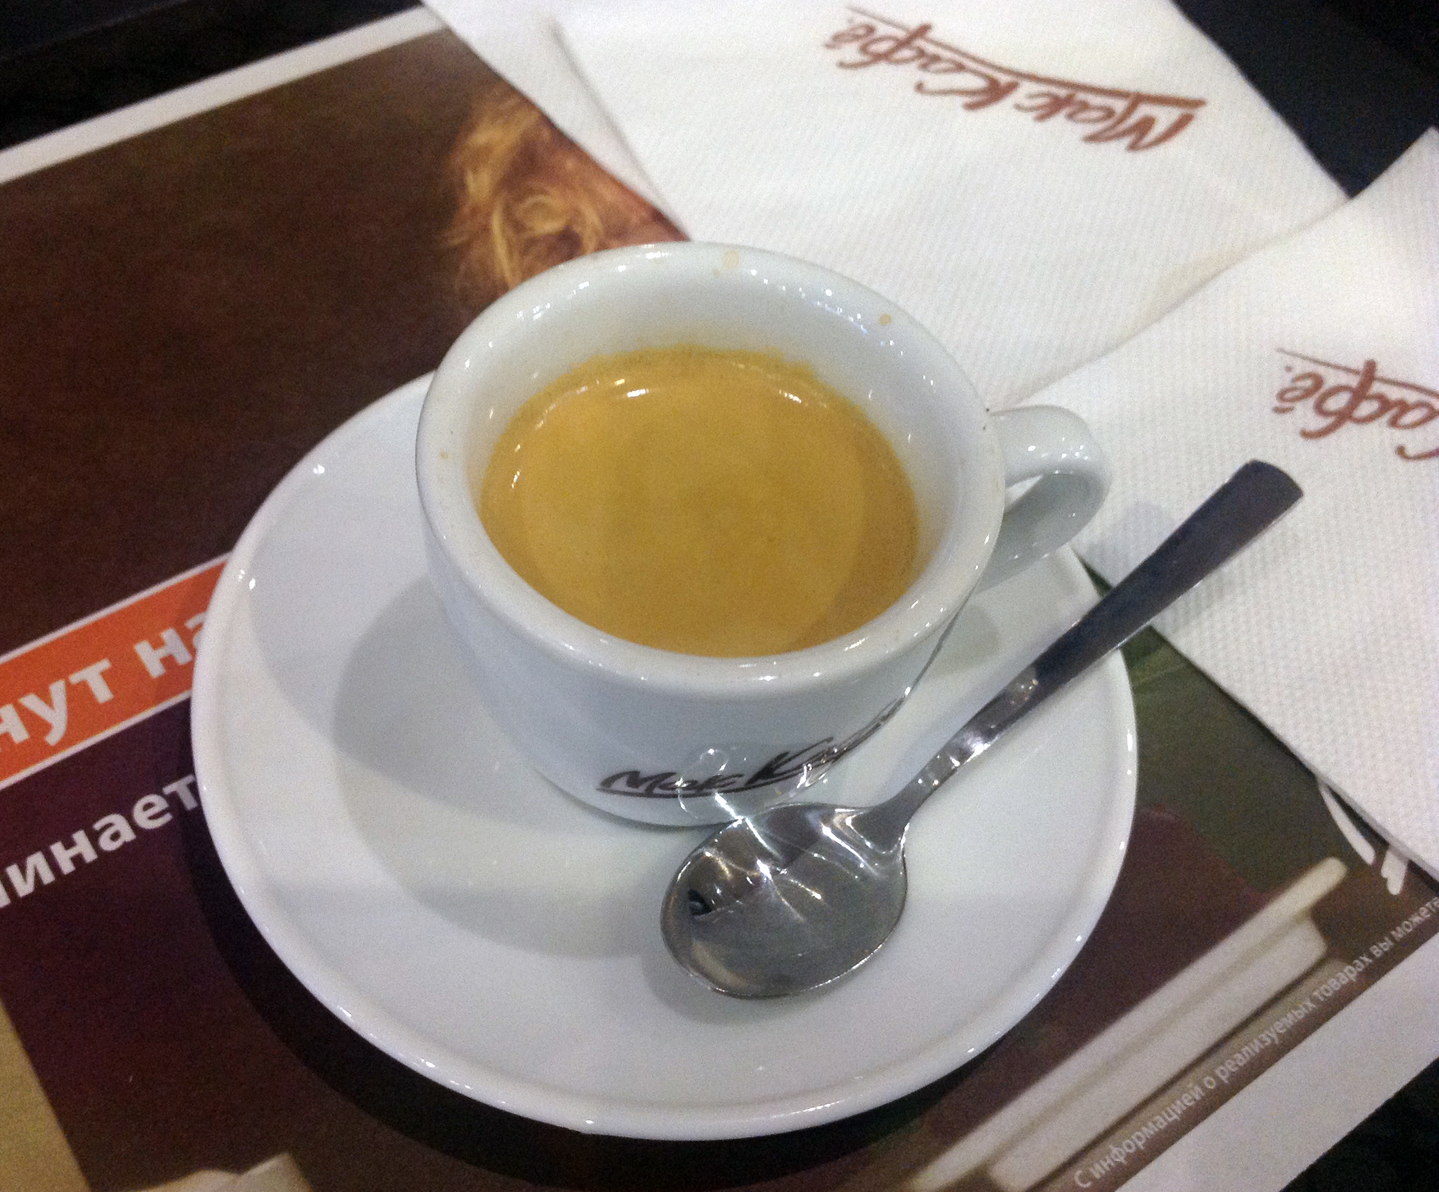 Росконтроль проверил кофе в московских кофейнях